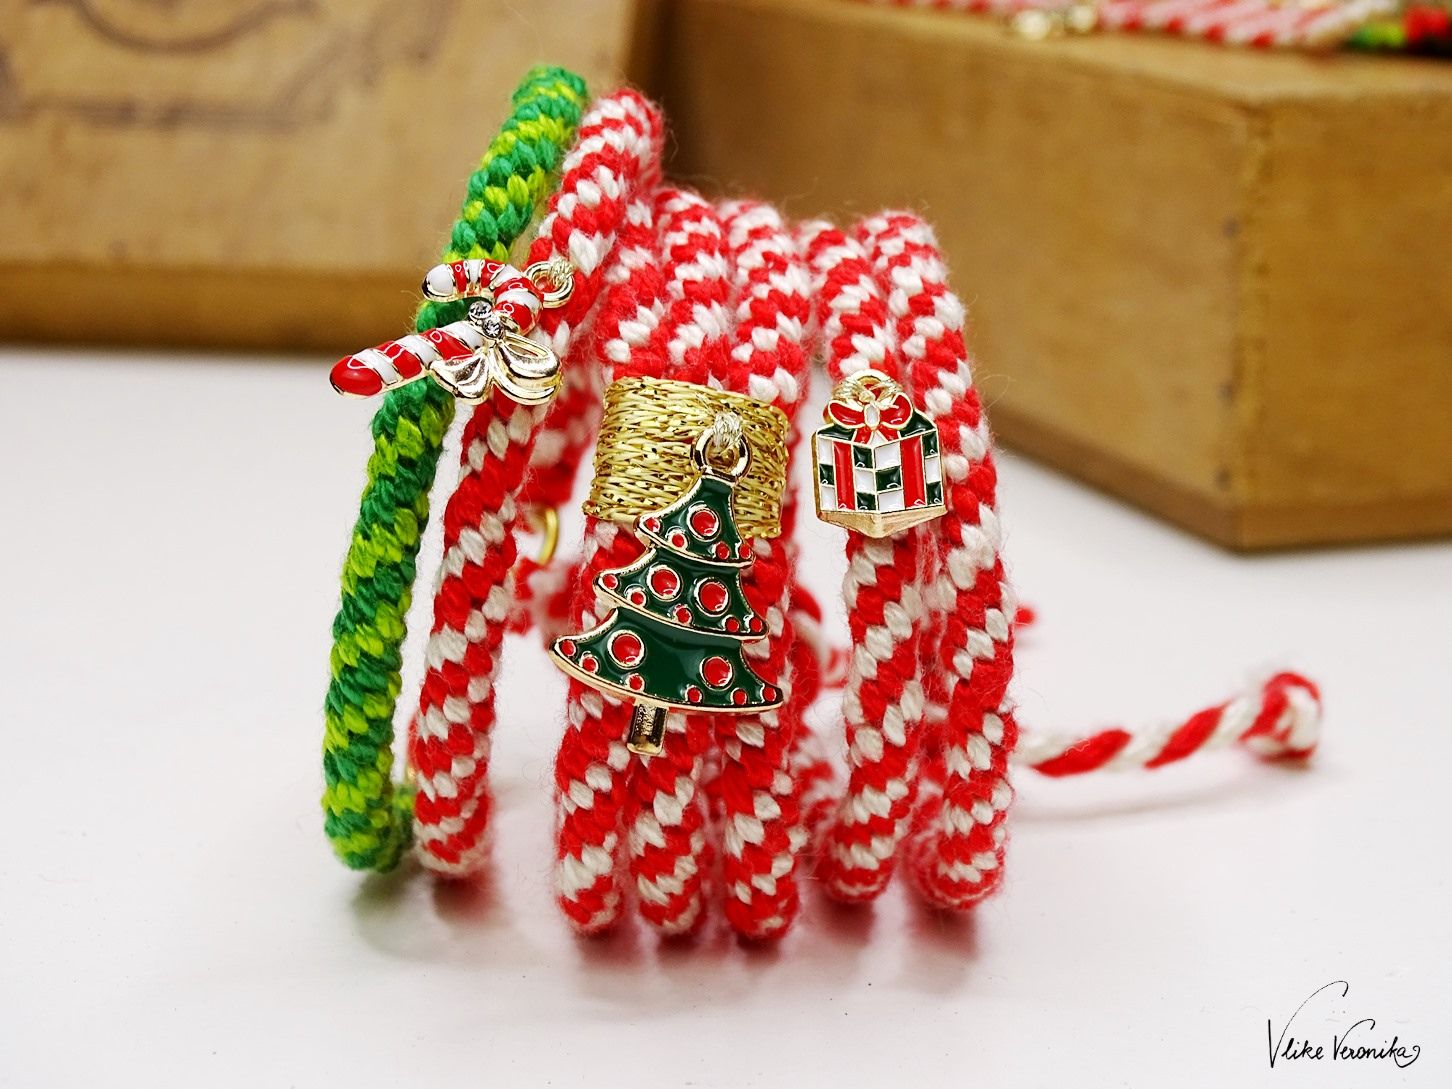 Die rot-weiß gekringelten Candy-Cane-Armbänder sind dein Must-have für den Advent.